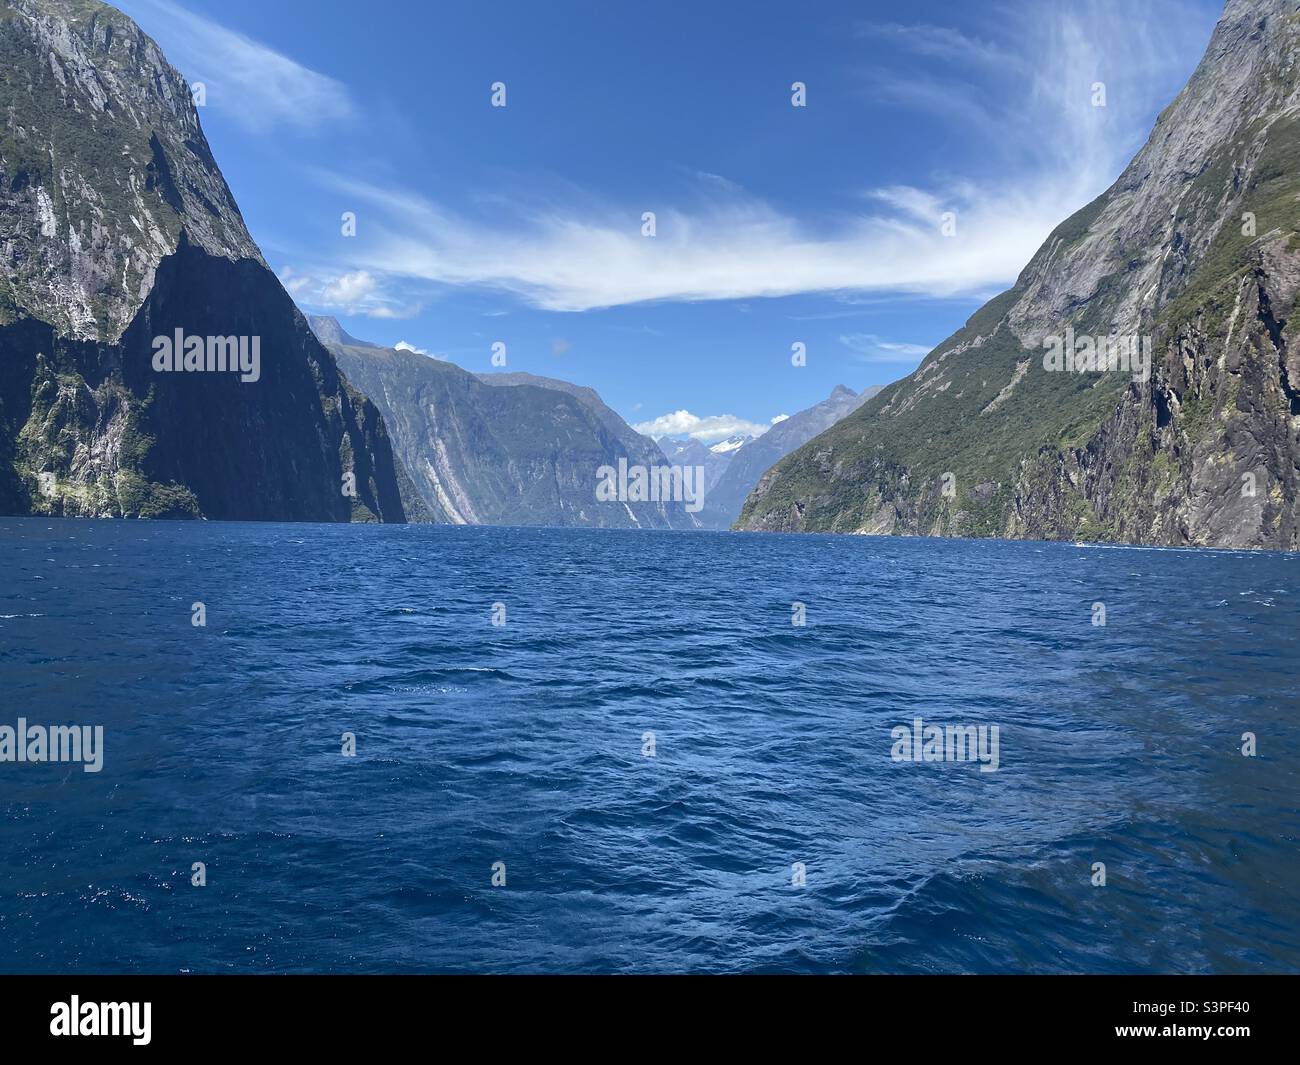 Milford klingen Neuseeland, Milford klingen Aotearoa, Wasser, Berge, blauer Himmel. Stockfoto